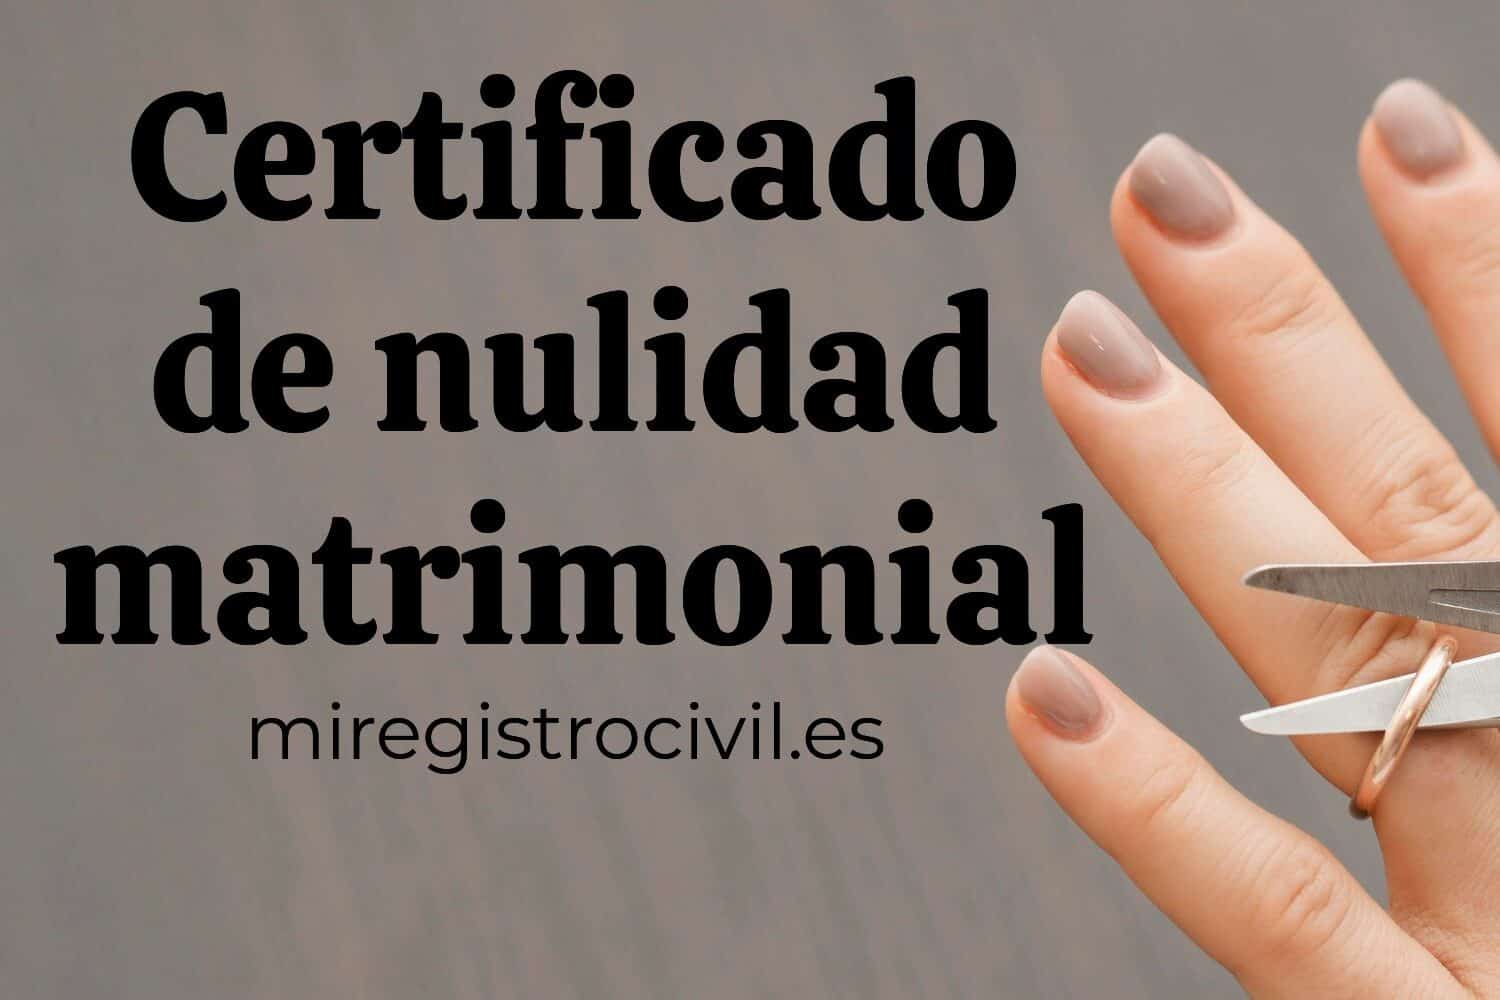 Consigue tu certificado de nulidad matrimonial del registro civil de forma online, presencial o telefónica